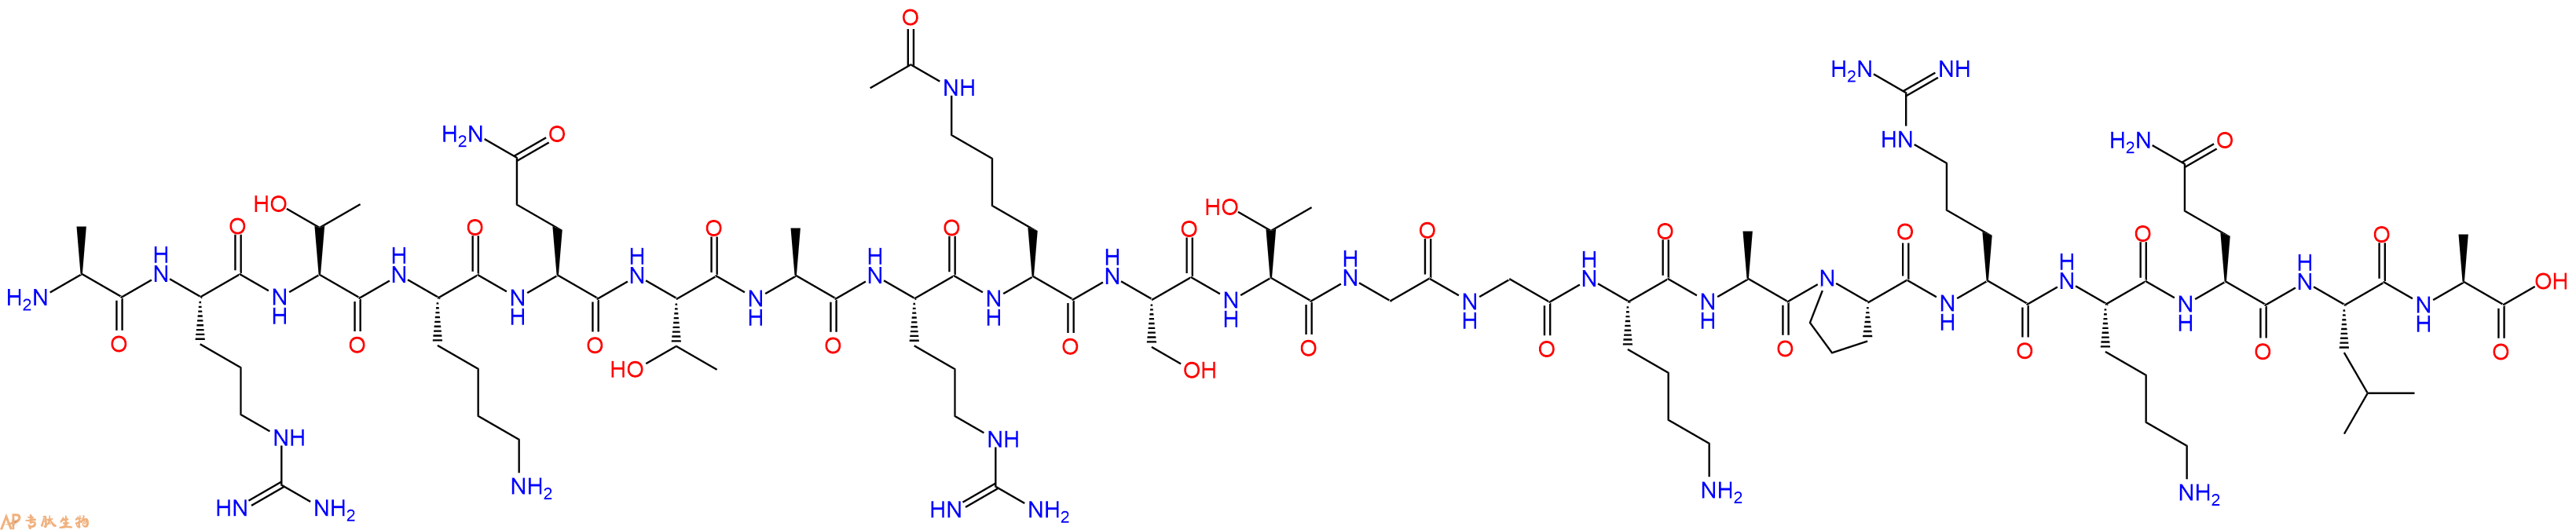 专肽生物产品组蛋白肽段[Lys(Ac)9]-Histone H3(1-21), H3K9(Ac)